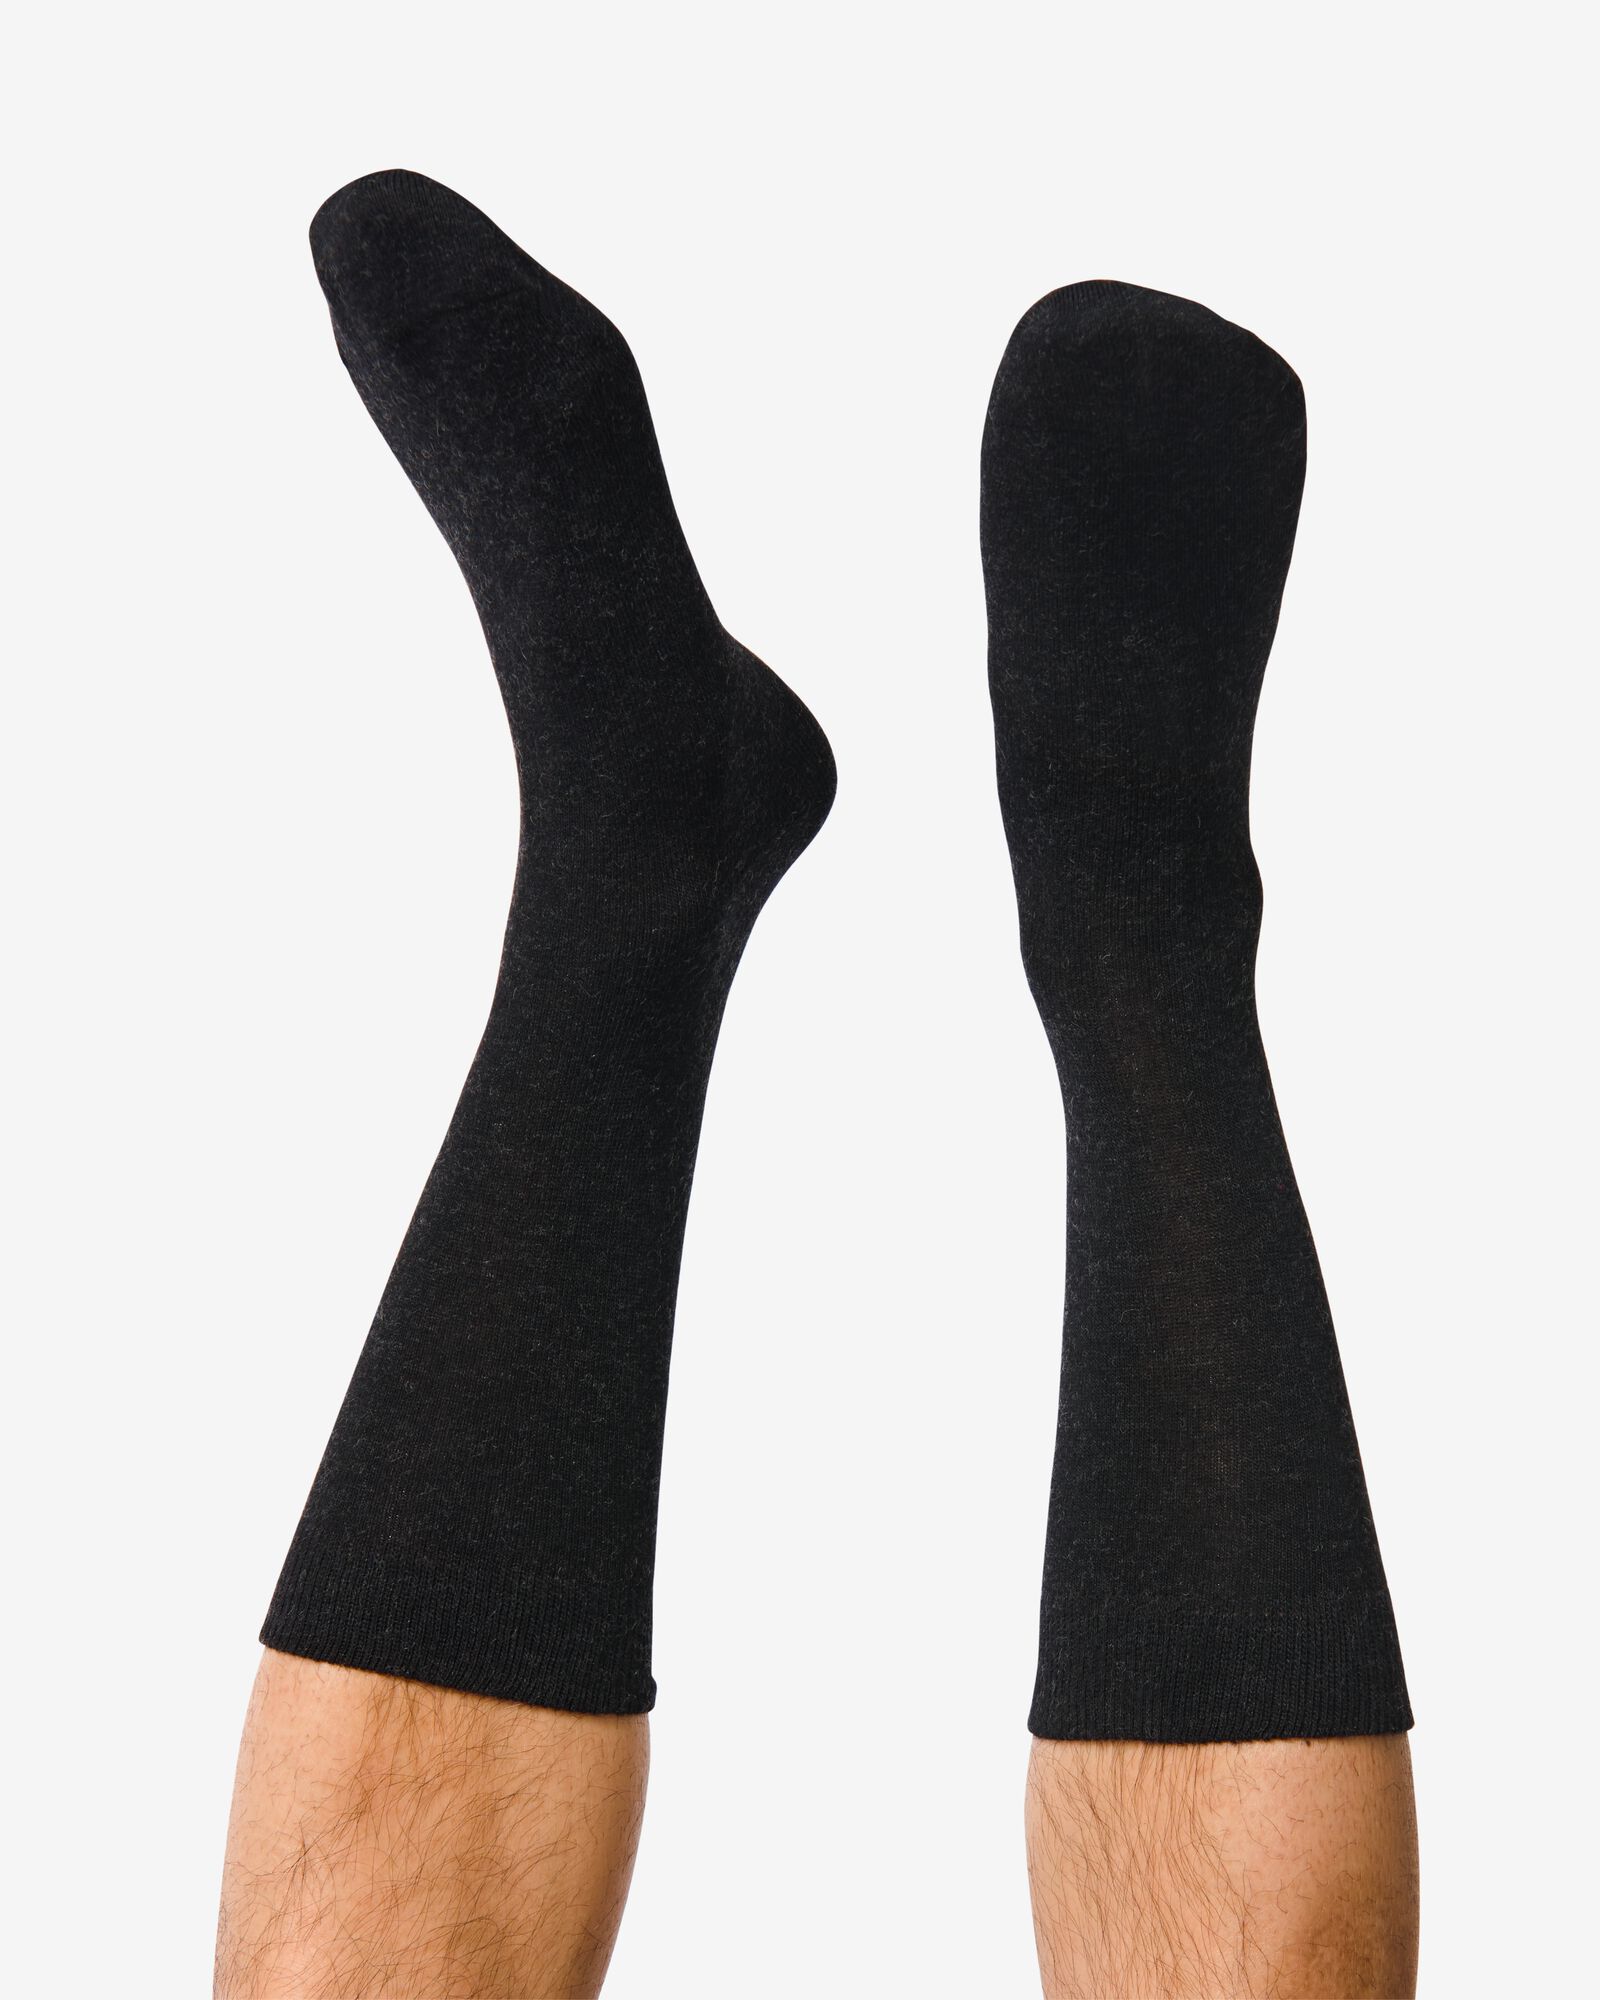 2 paires de chaussettes homme laine noir - HEMA